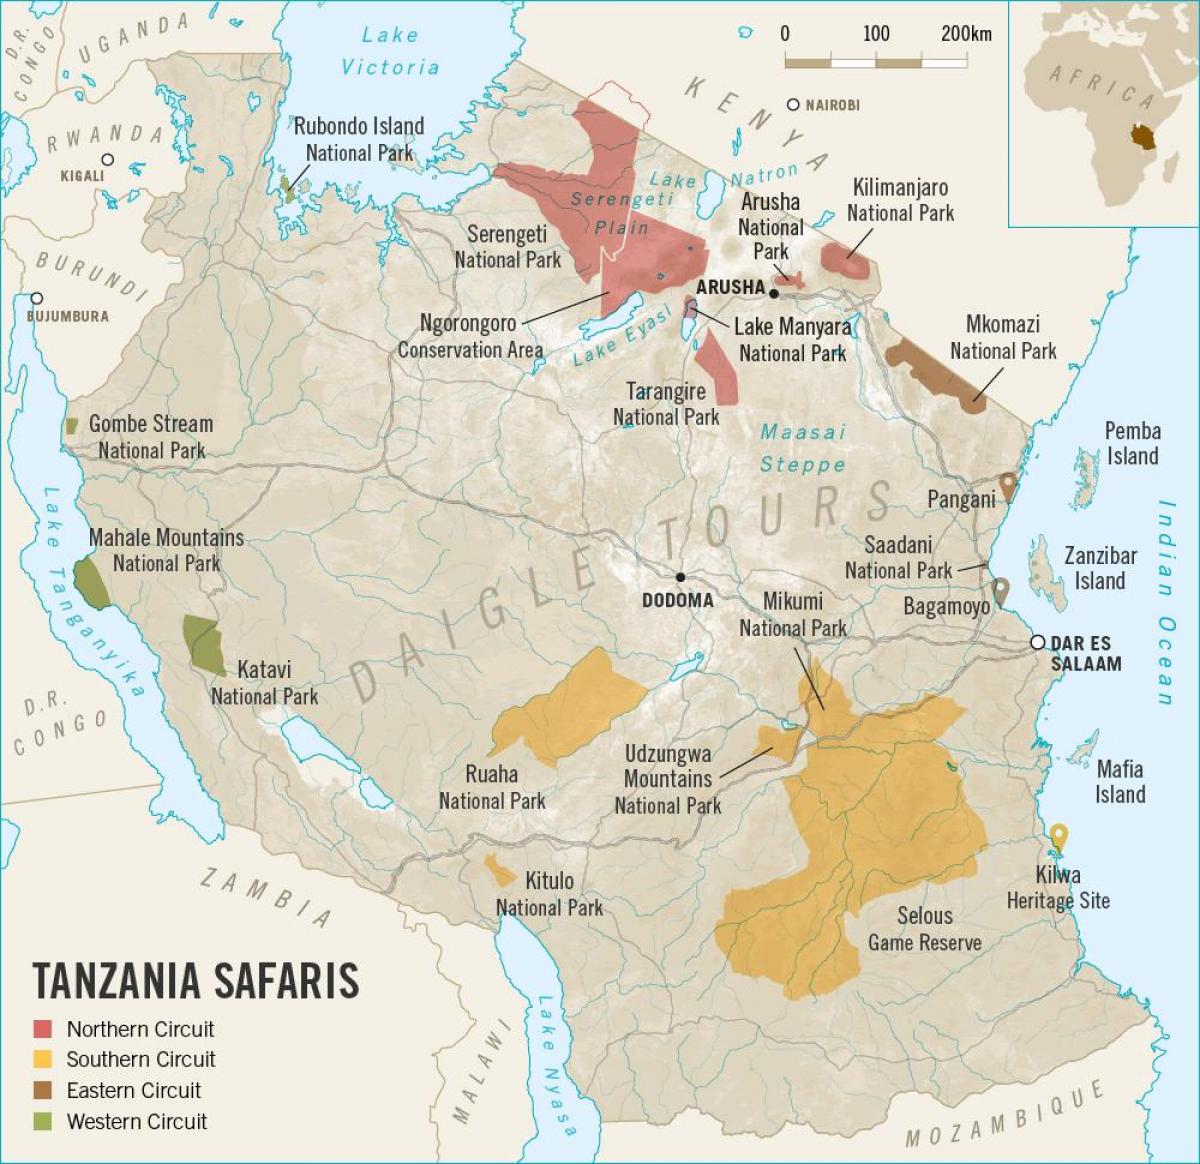 แผนที่ของแทนซาเนียท่องป่ากัน 